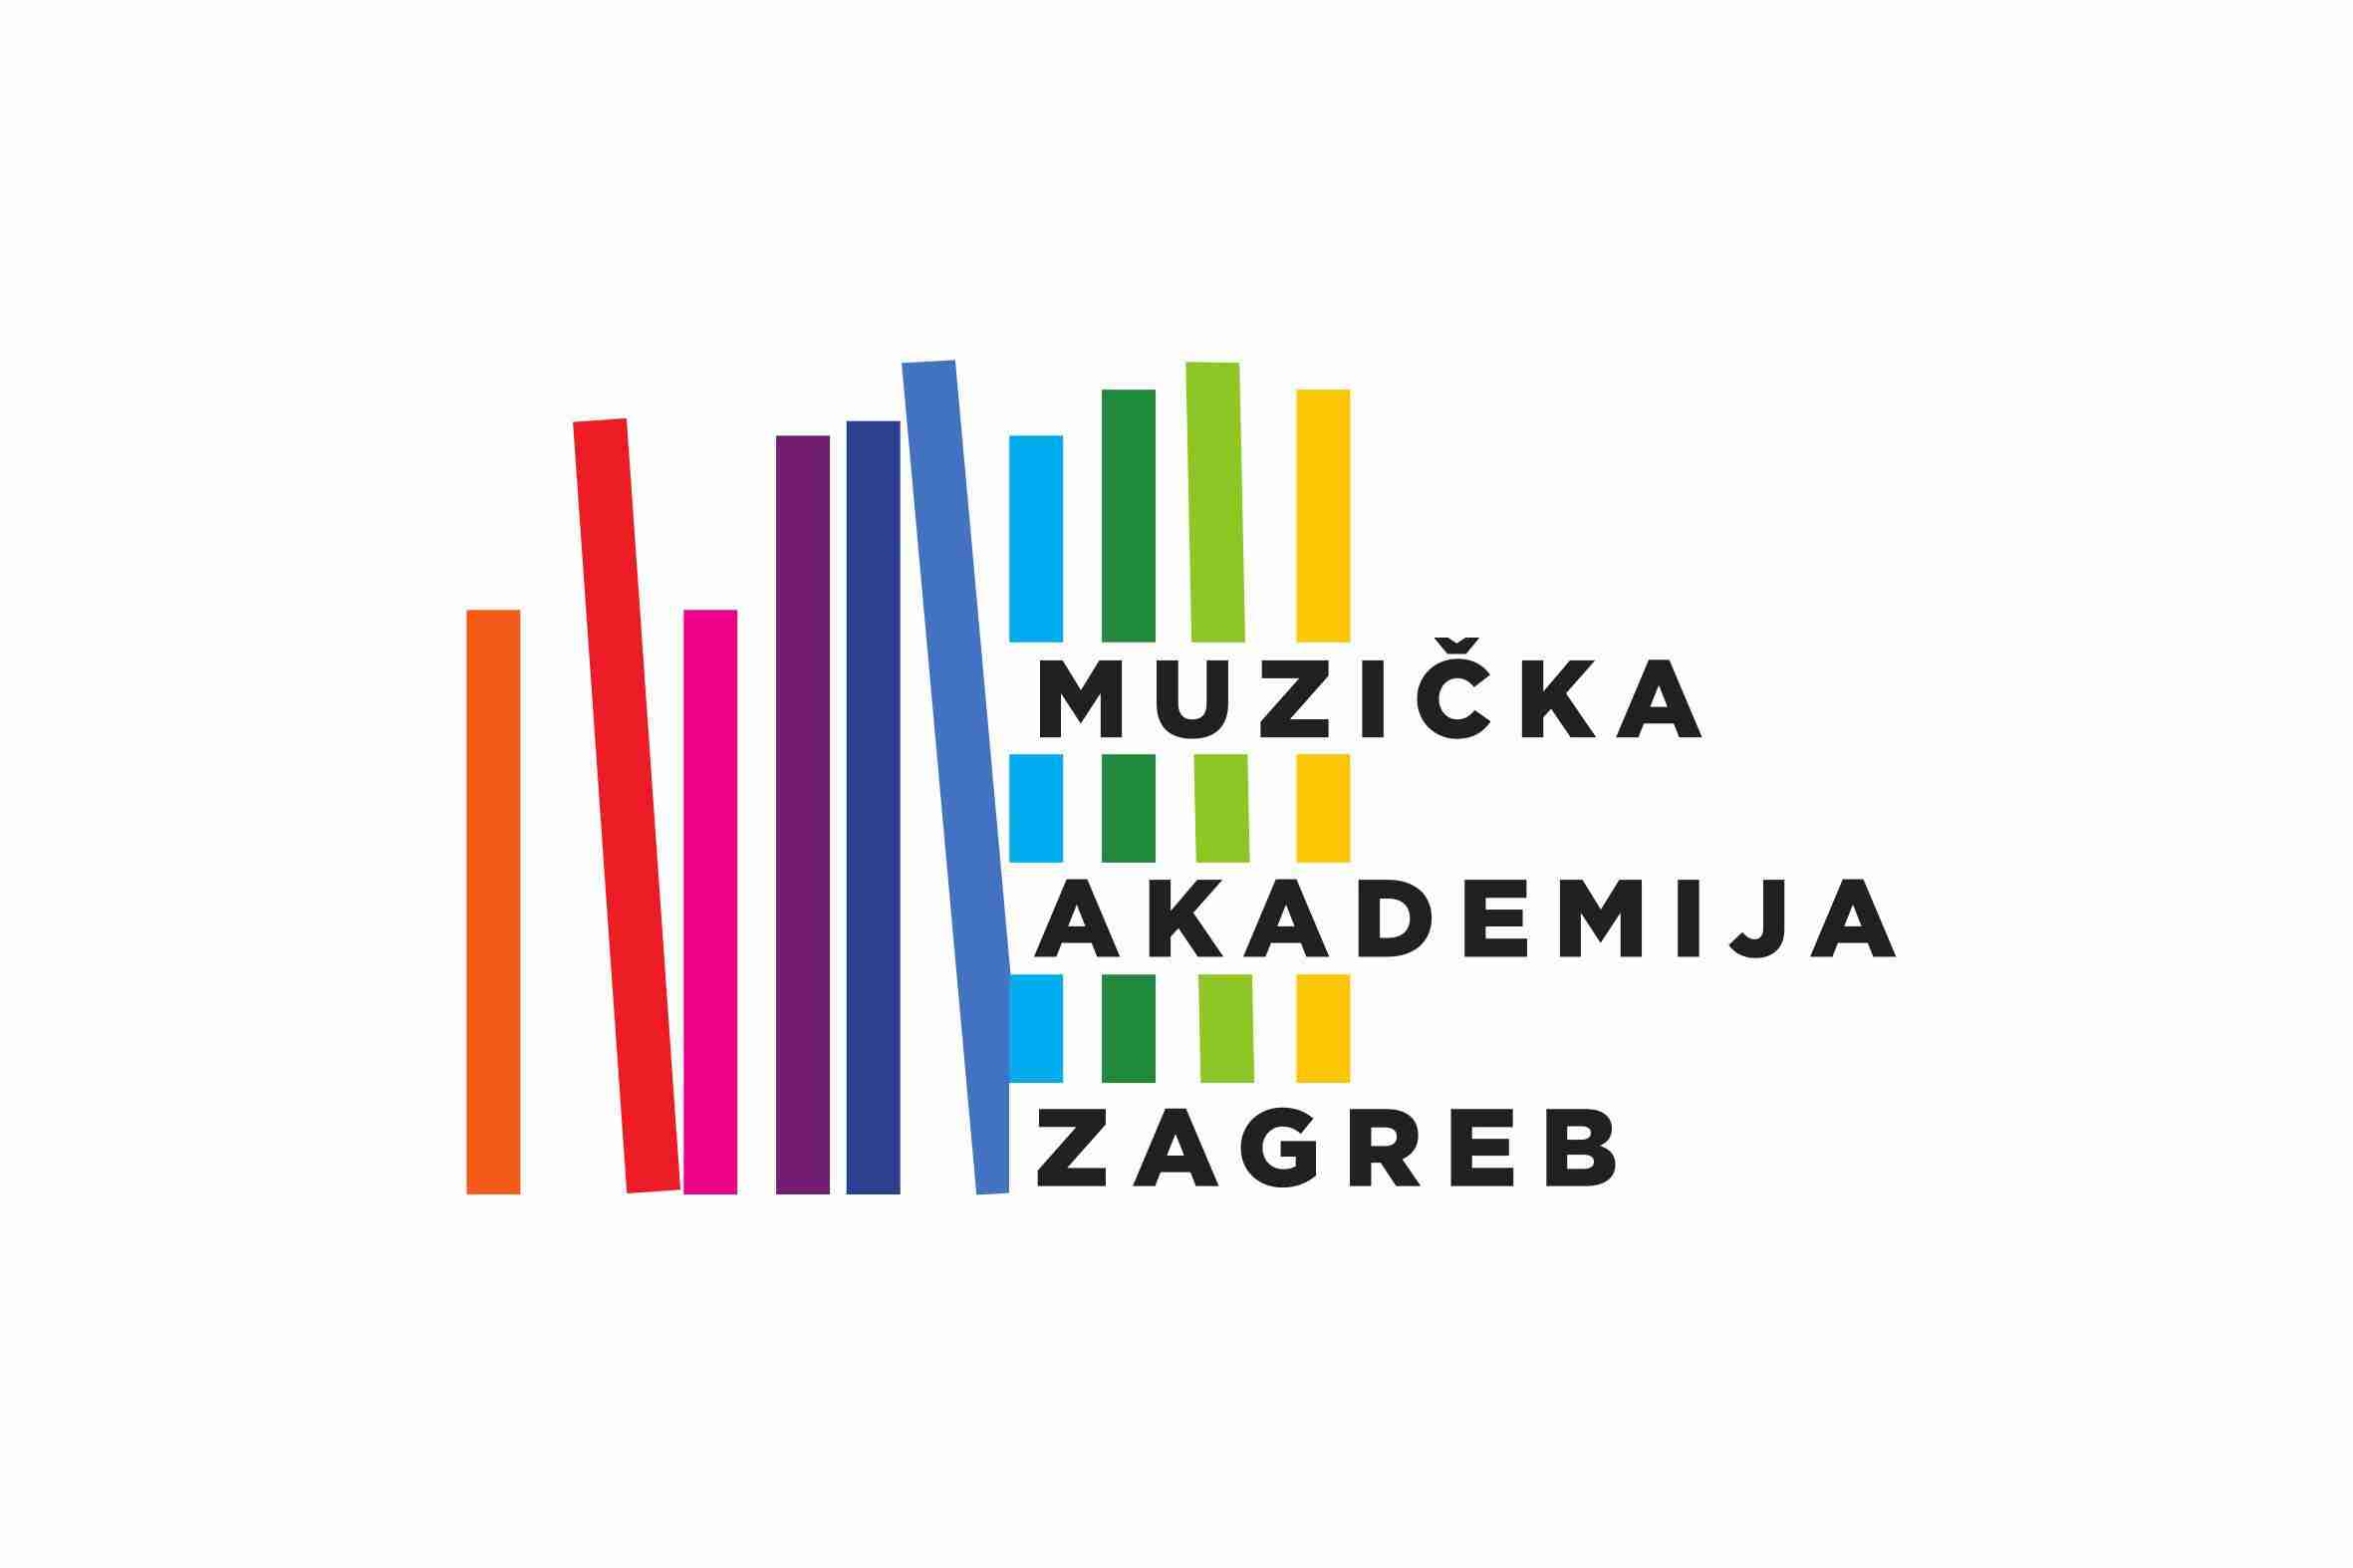 Muzička akademija